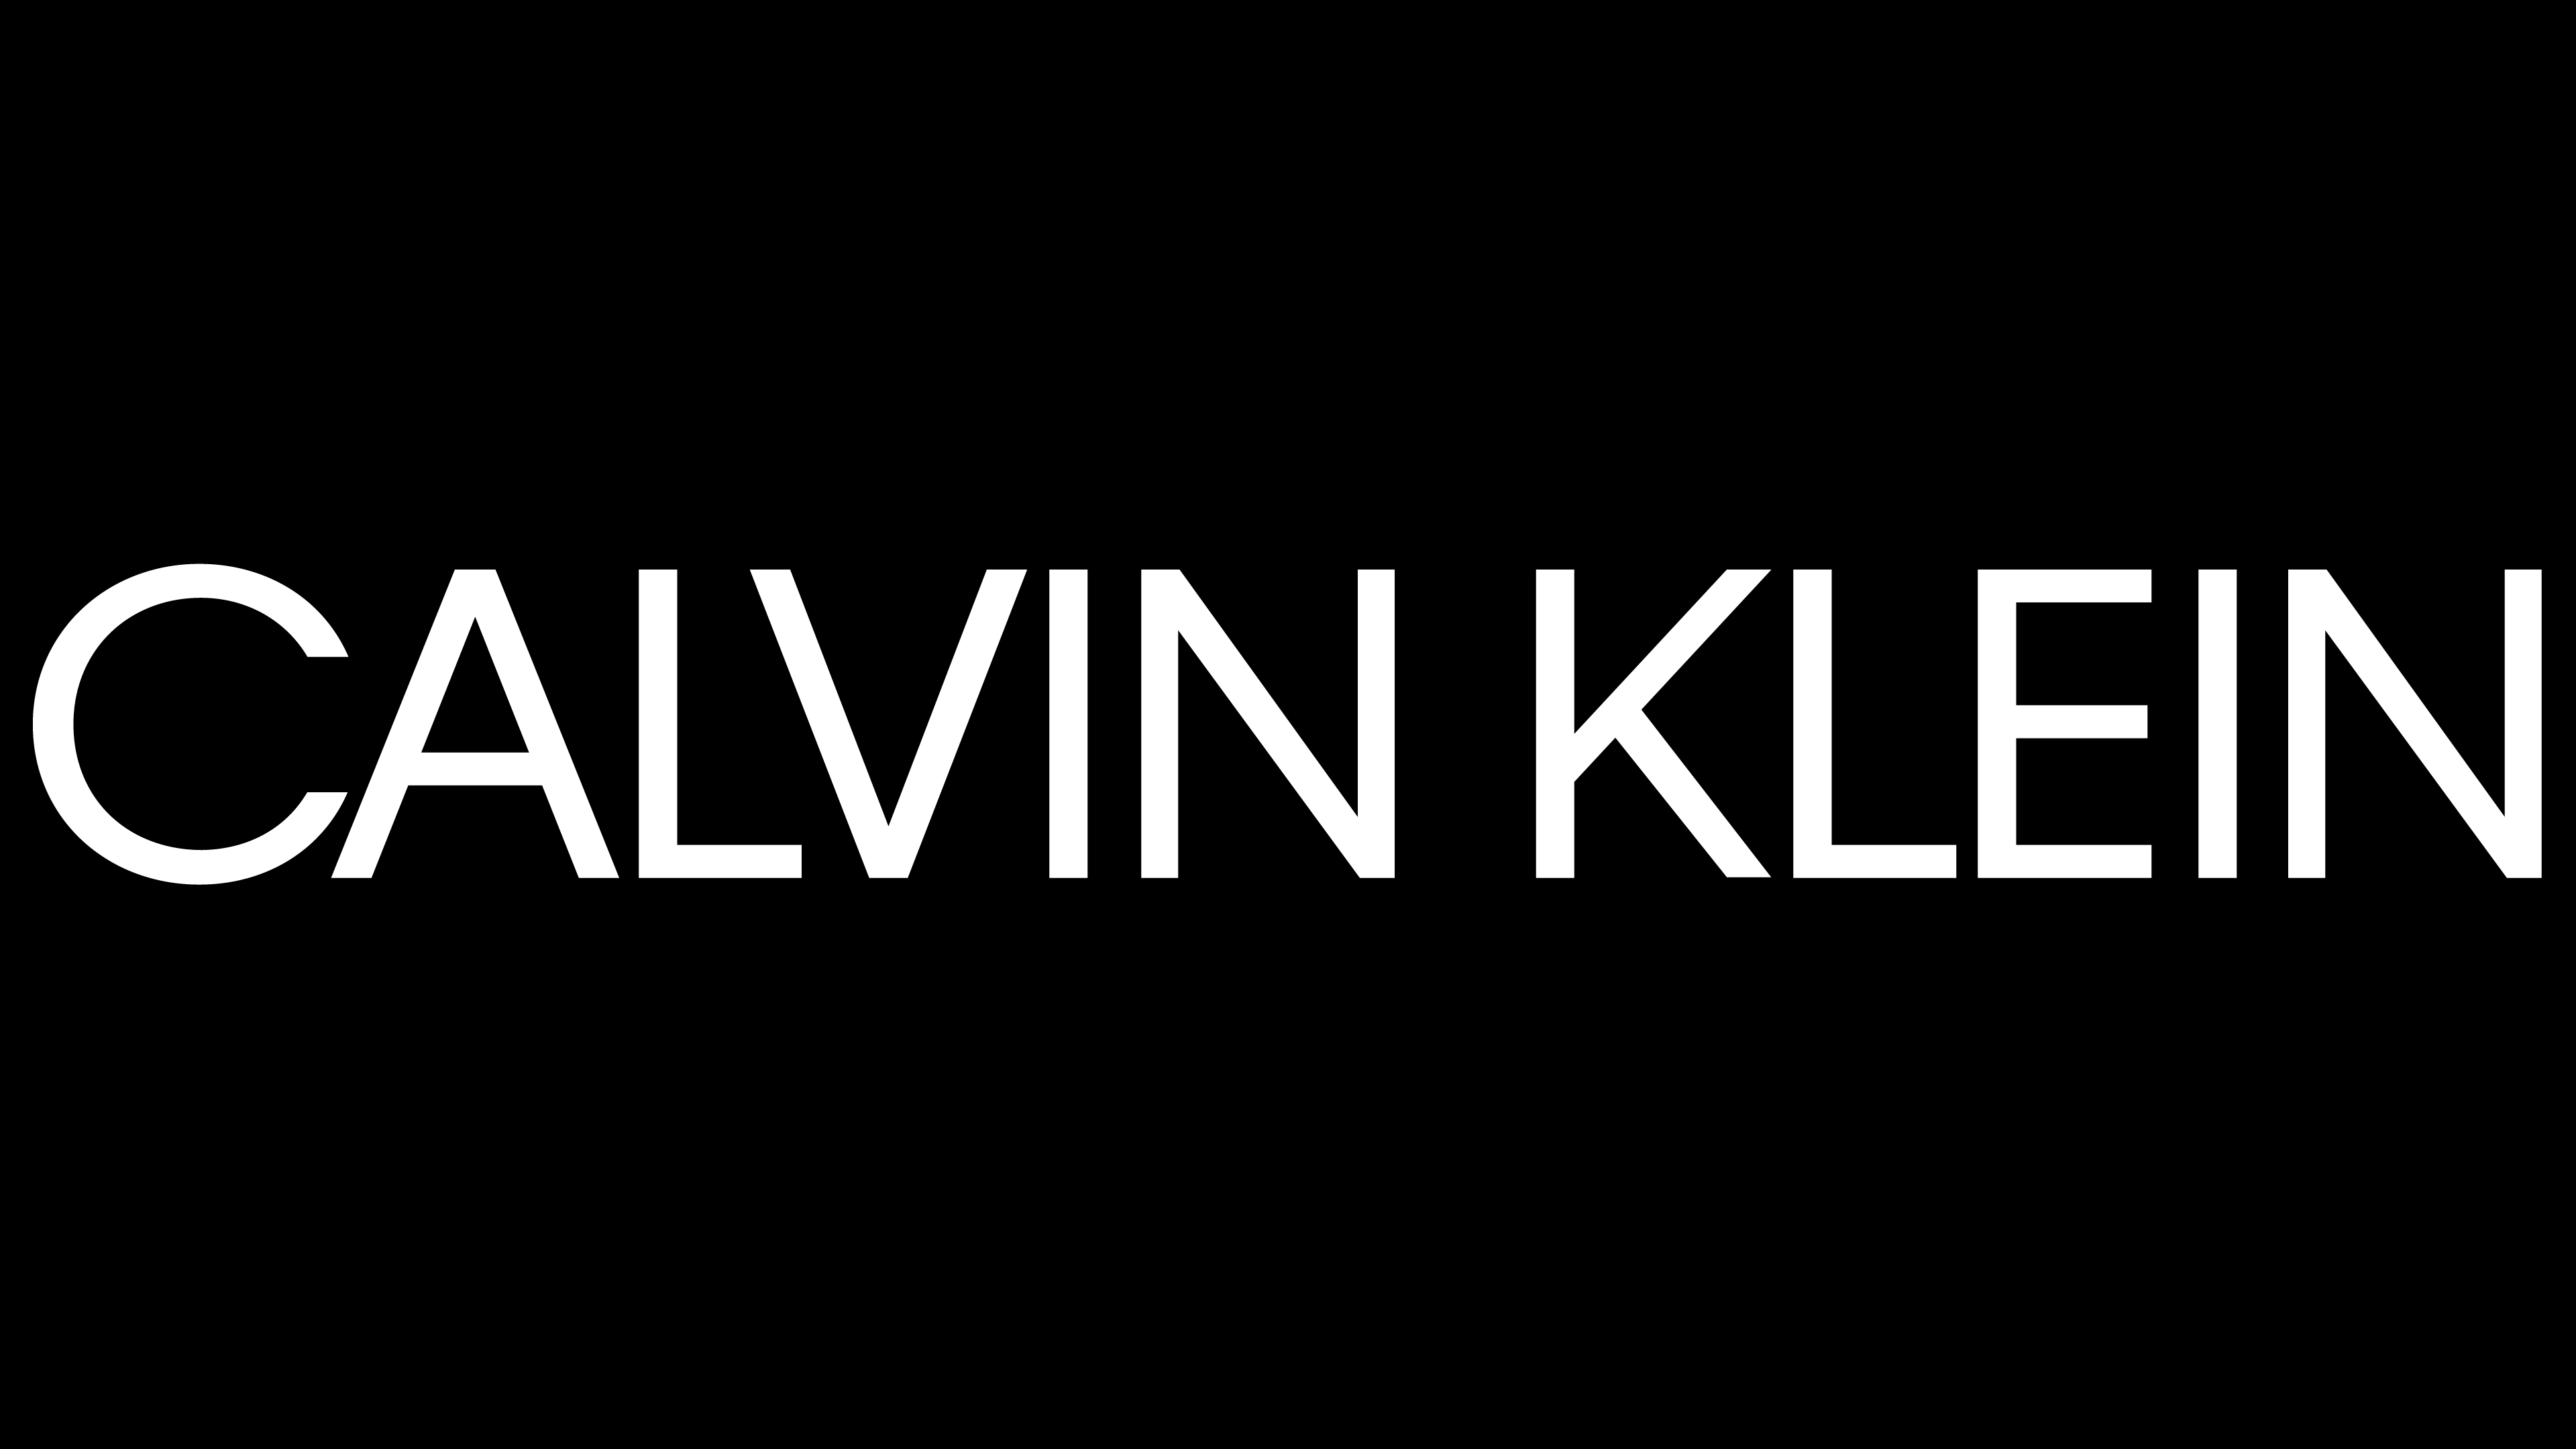 Blanco Logo - Calvin Klein logo. LOGOS de MARCAS